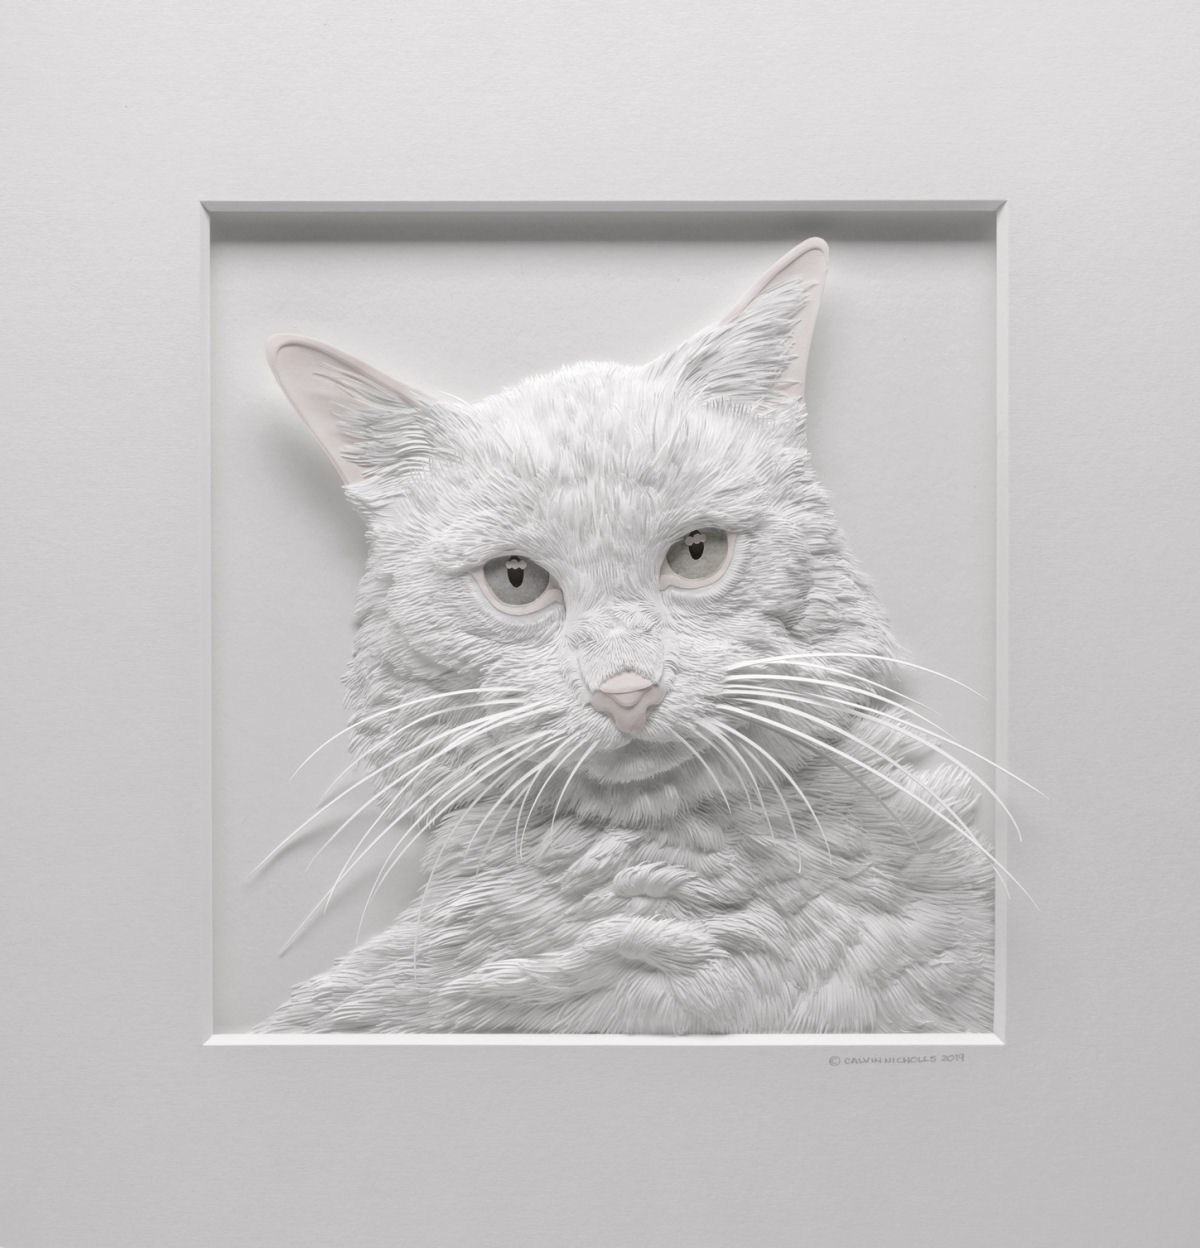 Esculturas texturizadas de animais emergem de cortes intrincados de papel 02